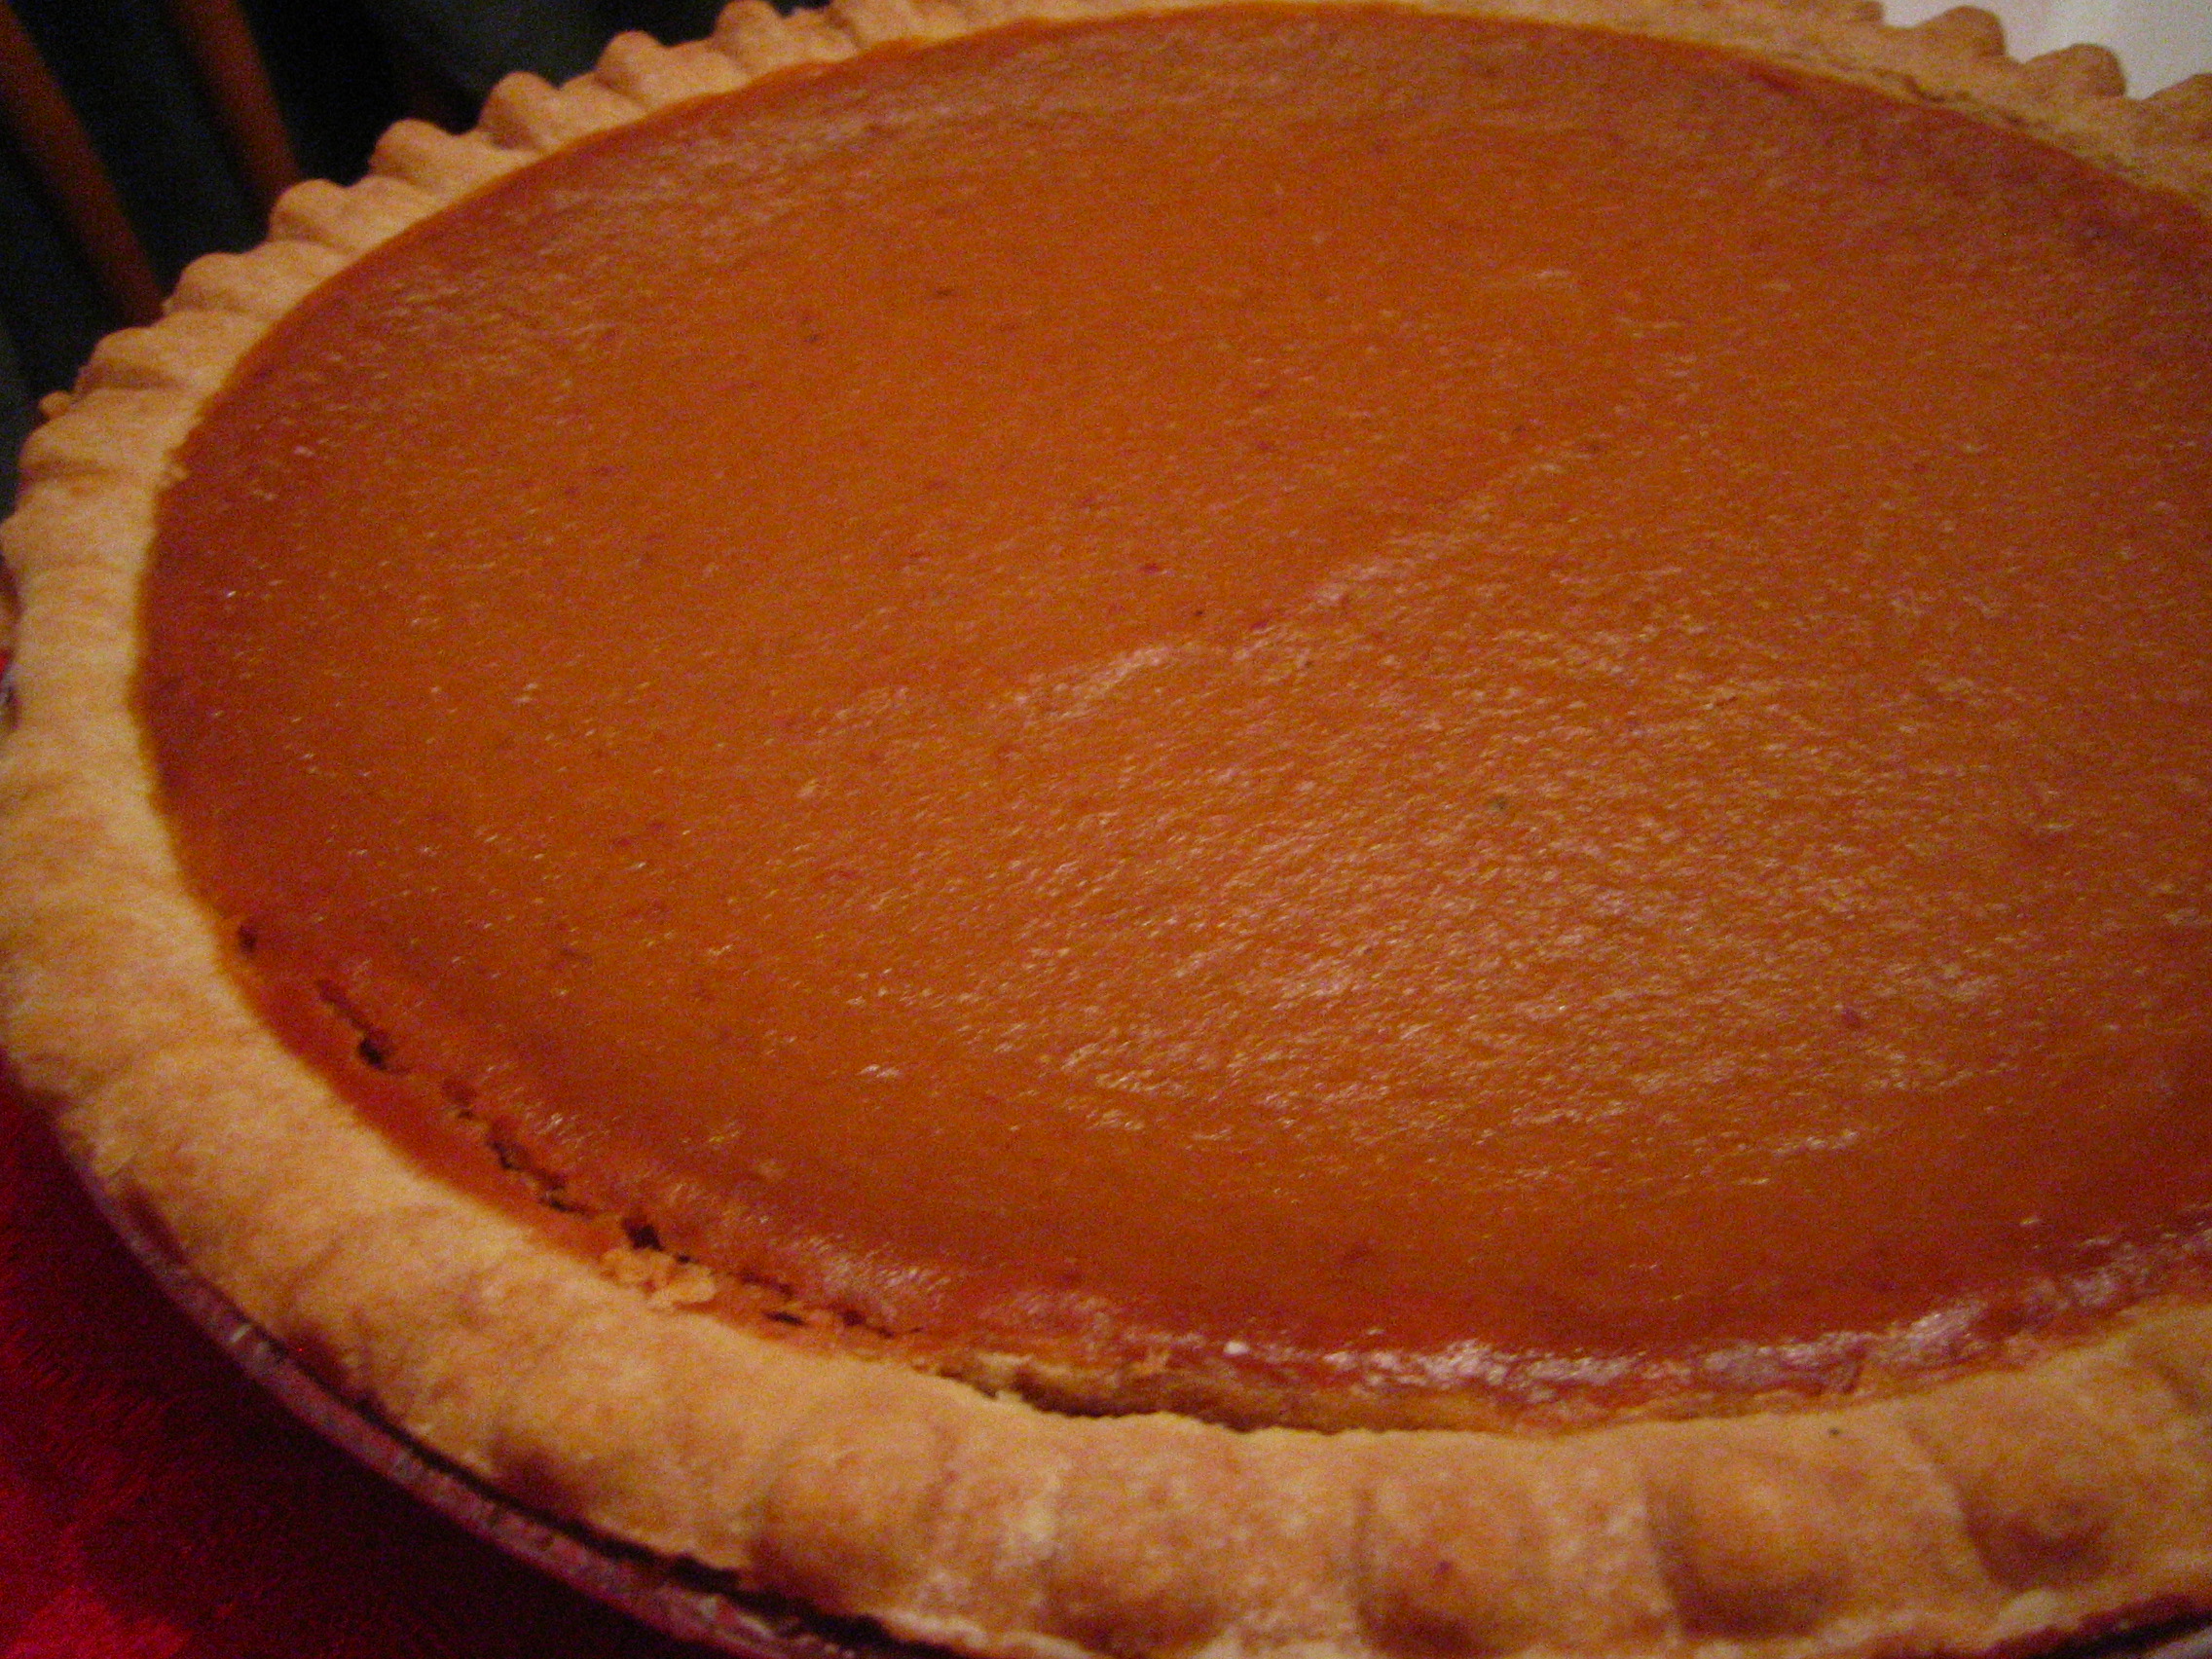 Pumpkin_pie_with_crust_detail